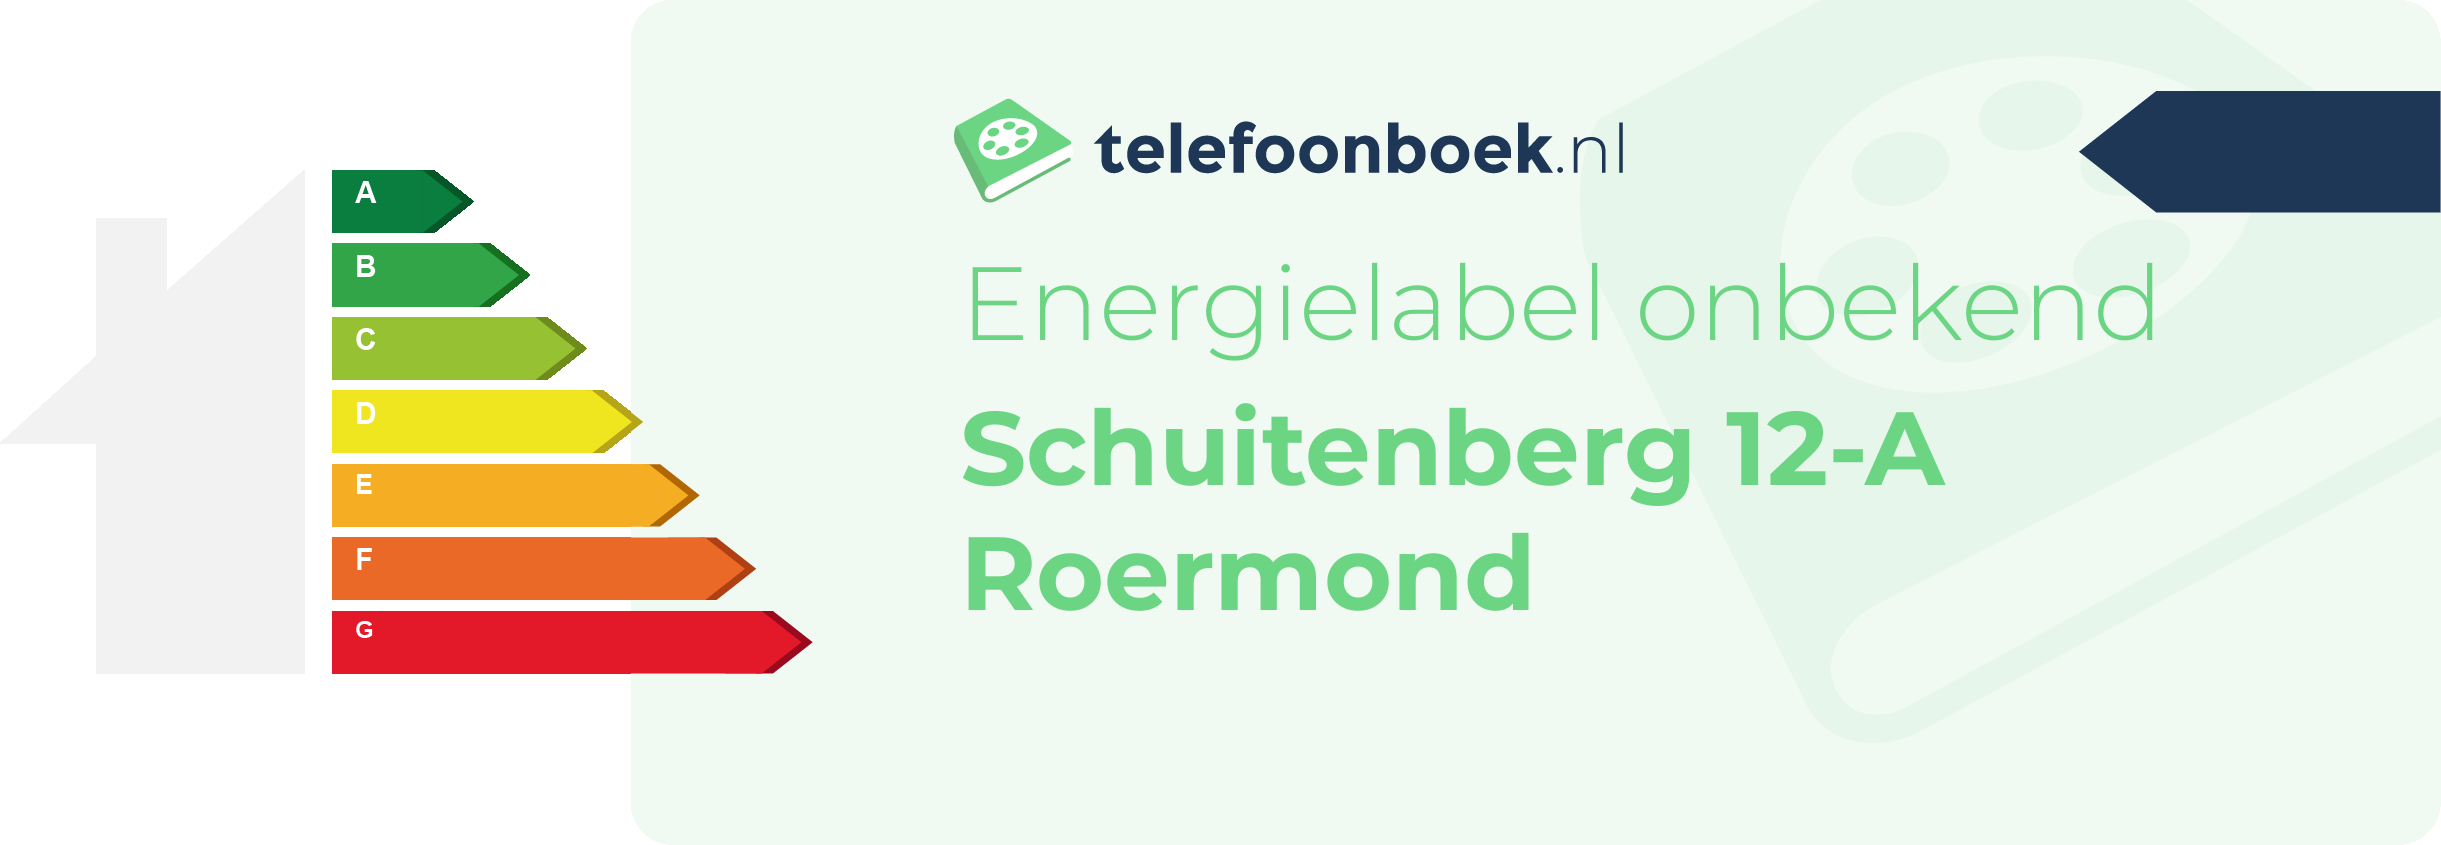 Energielabel Schuitenberg 12-A Roermond